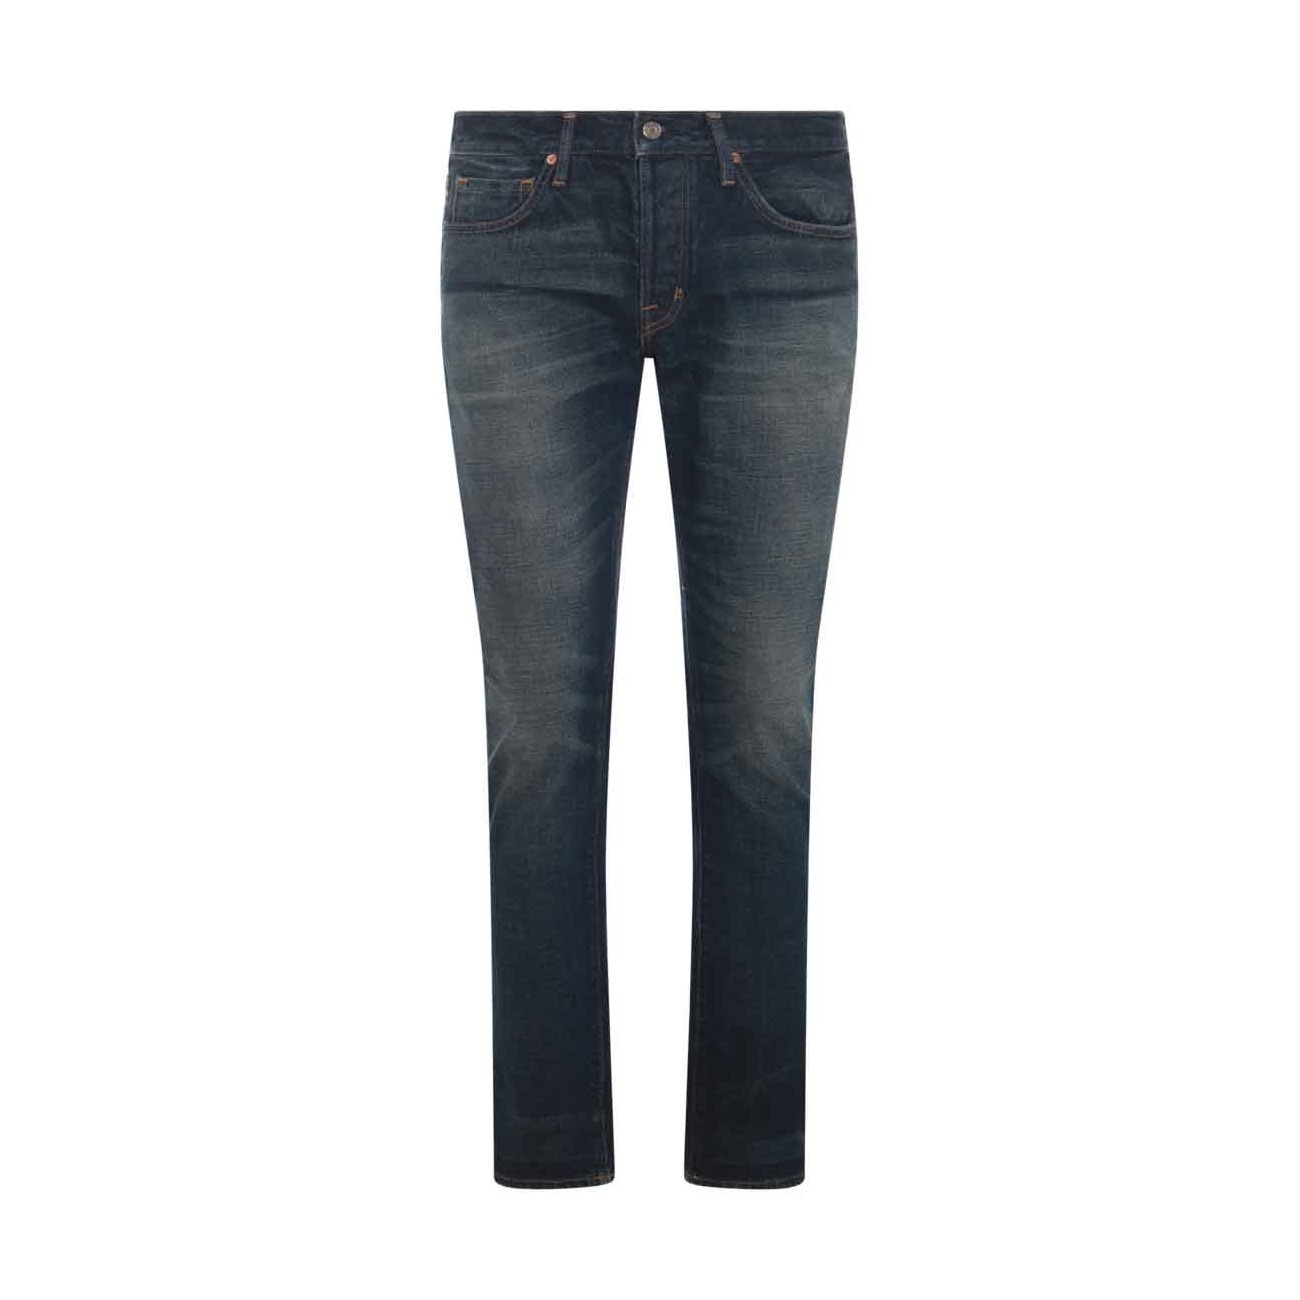 blue cotton denim jeans - 1